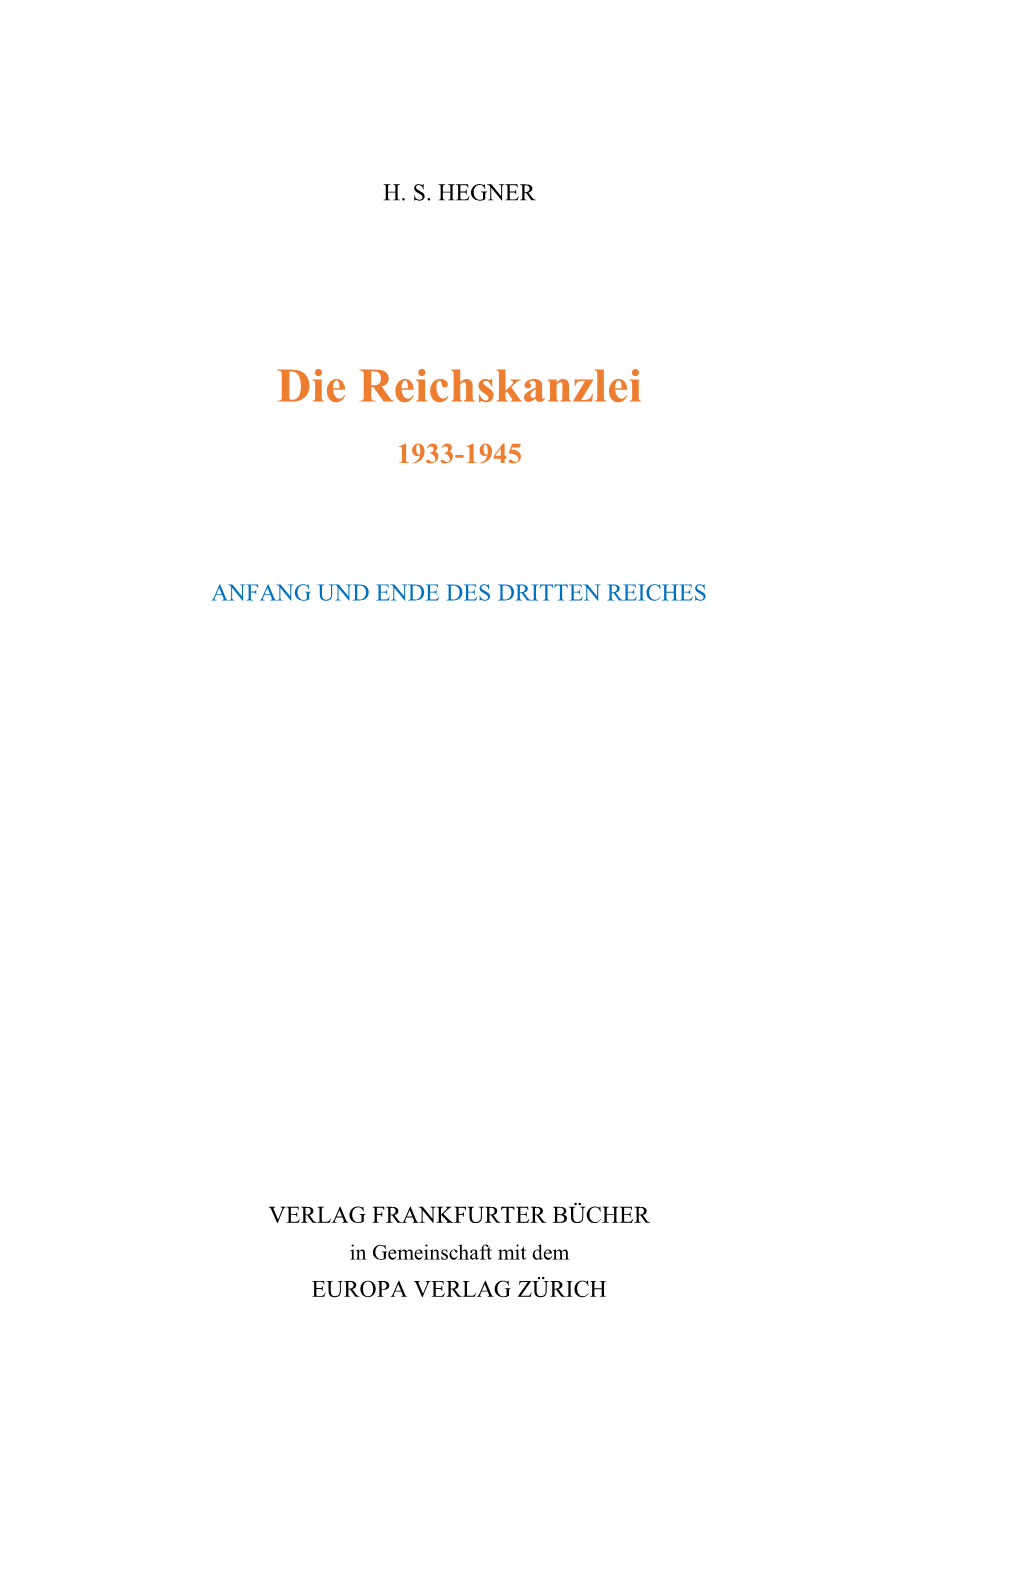 Die Reichskanzlei 1933-1945